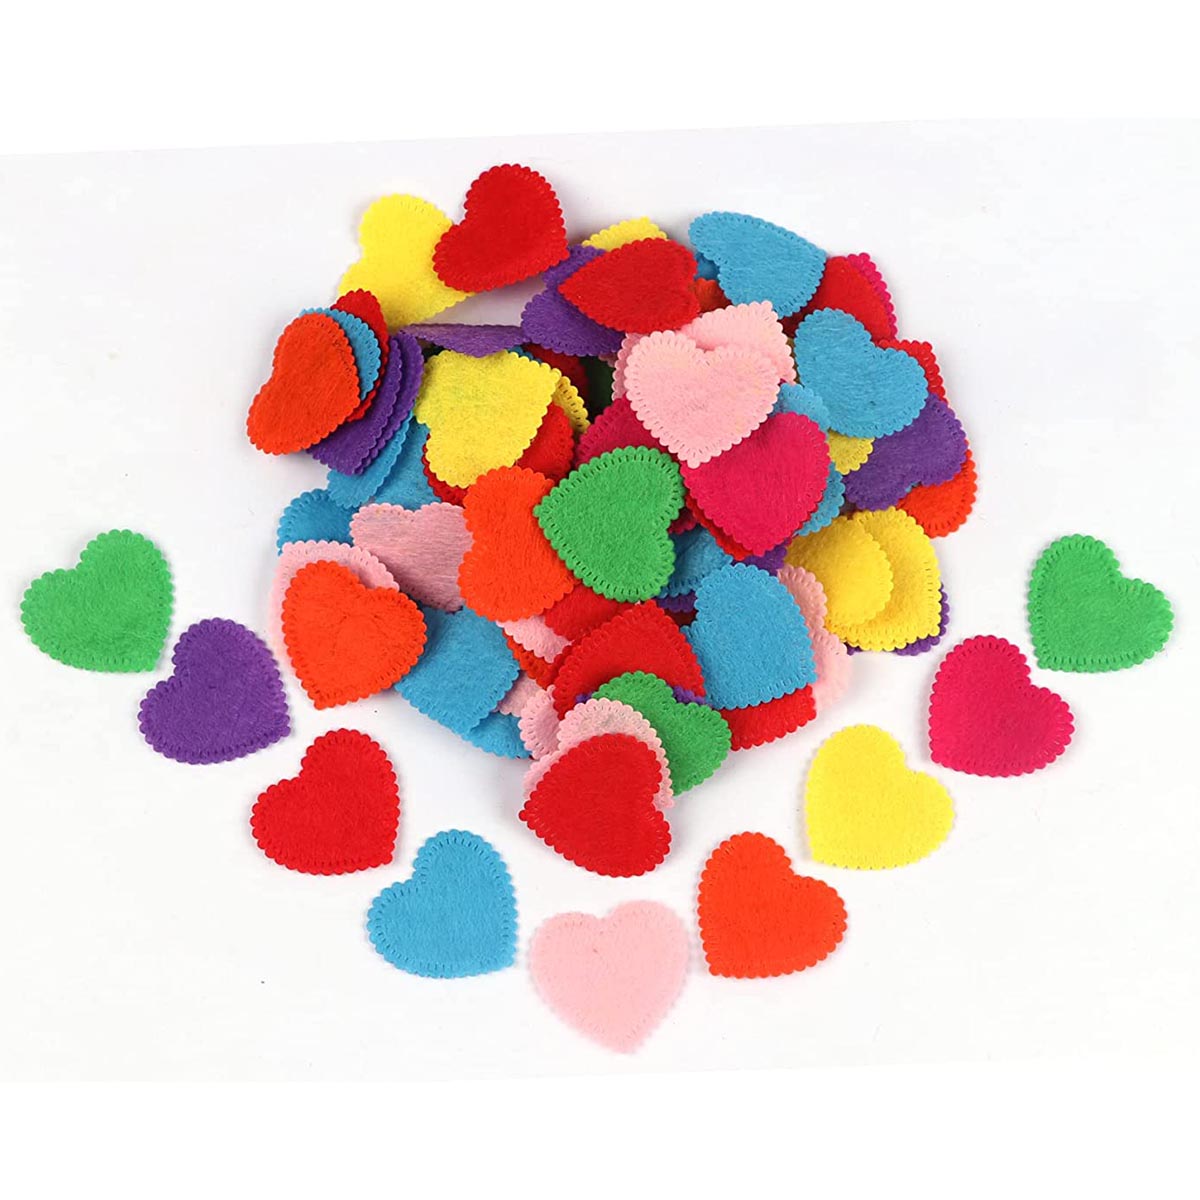 200pcs Felt Heart Fabric Embellishments,1 3/8 Inch Mix Color